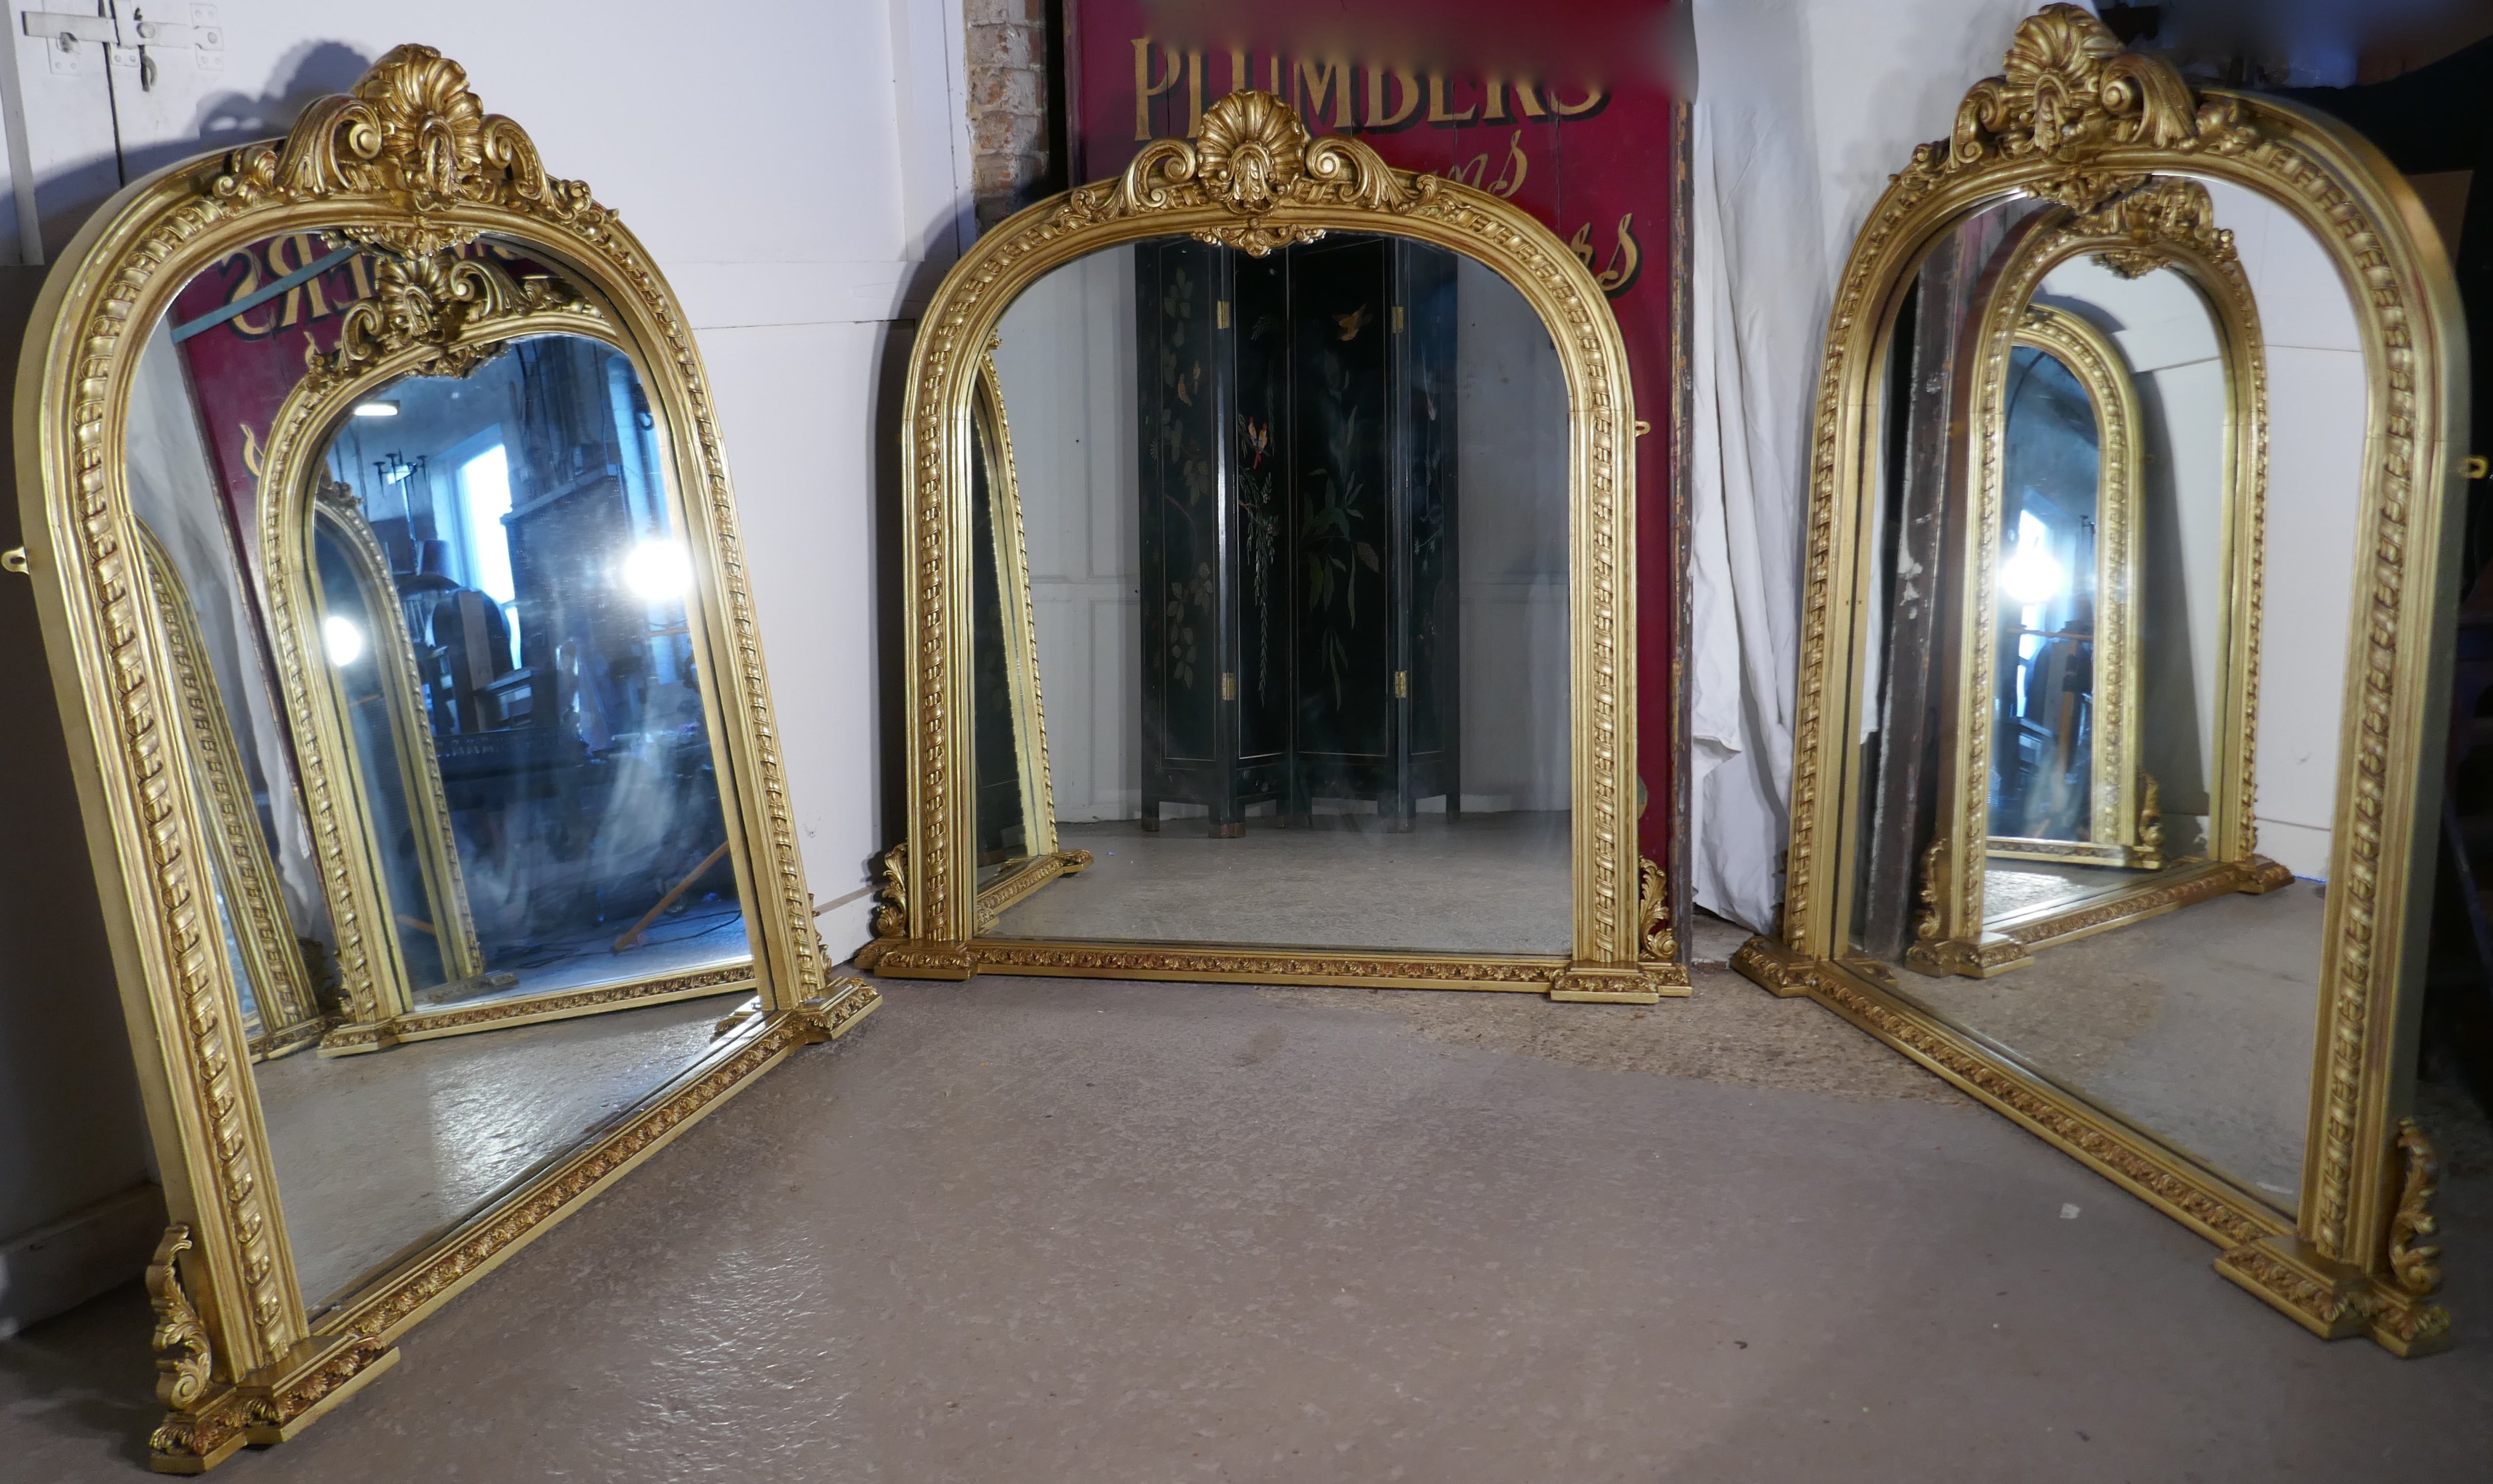 Seltener Satz von 3 großen vergoldeten Rokoko-Spiegeln mit Bogen über dem Mantel